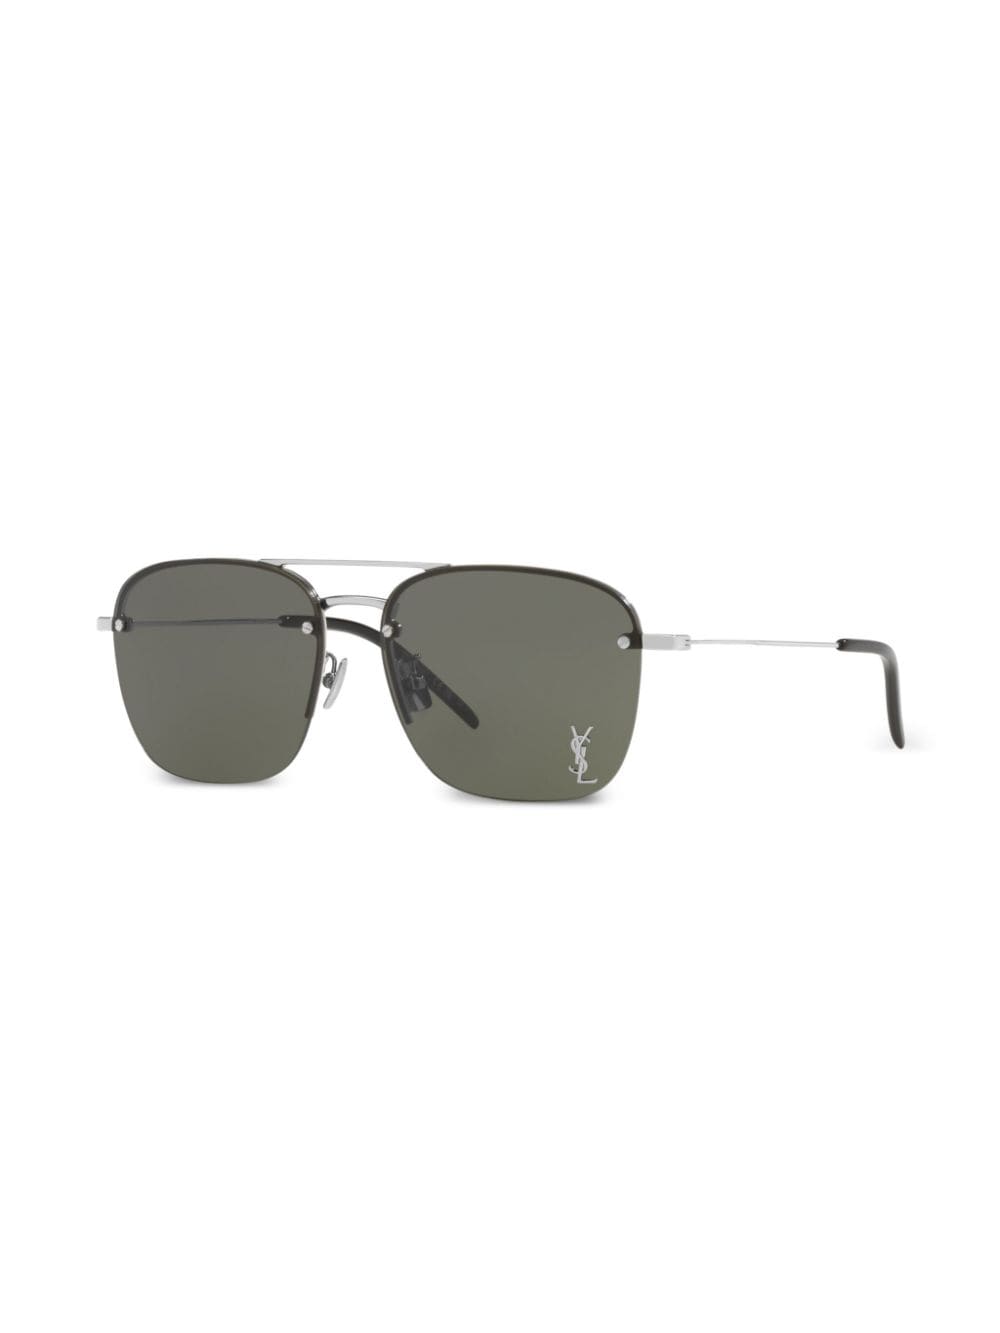 Saint Laurent Eyewear SL 312 M zonnebril met metalen montuur - Zilver